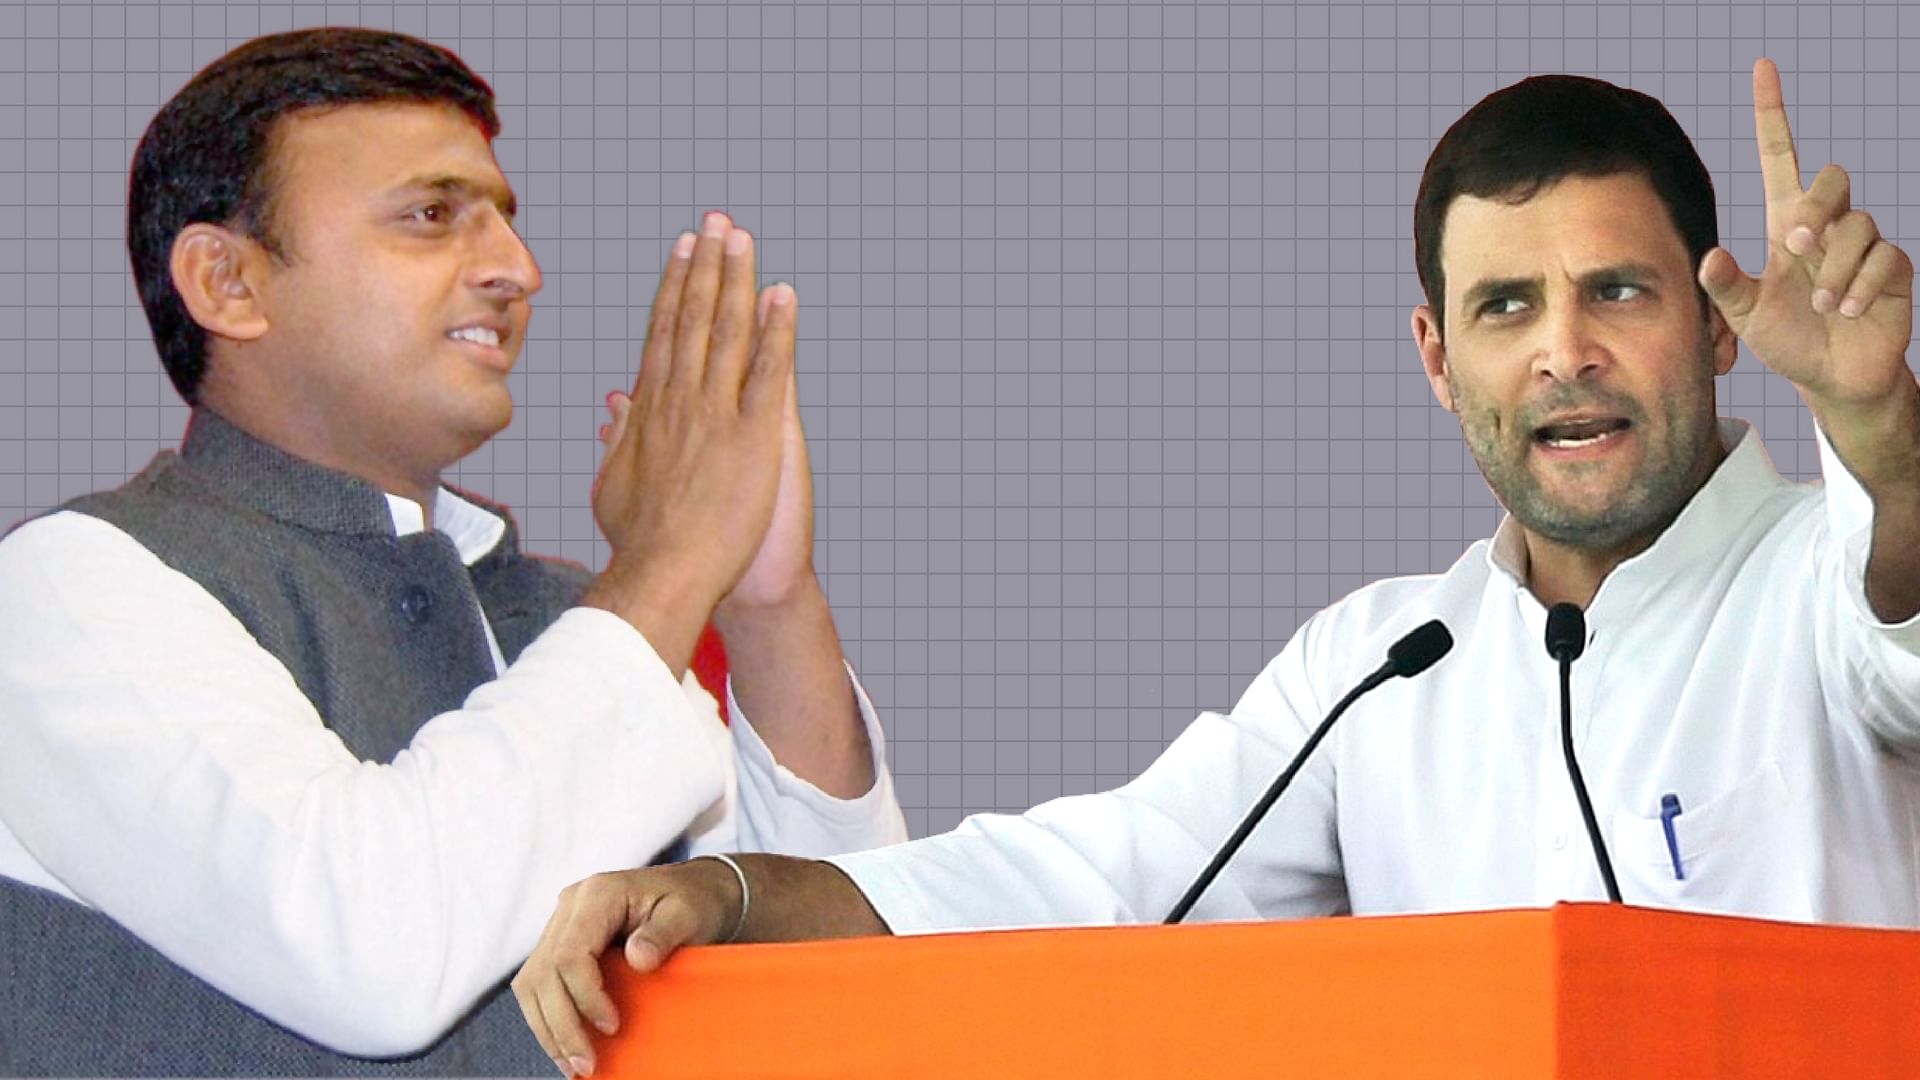 

उत्तर प्रदेश विधान सभा चुनाव में जीत पक्की करने के लिए राहुल गांधी और अखिलेश यादव साझा रैलियां भी करेंगे (फोटो: द क्विंट)